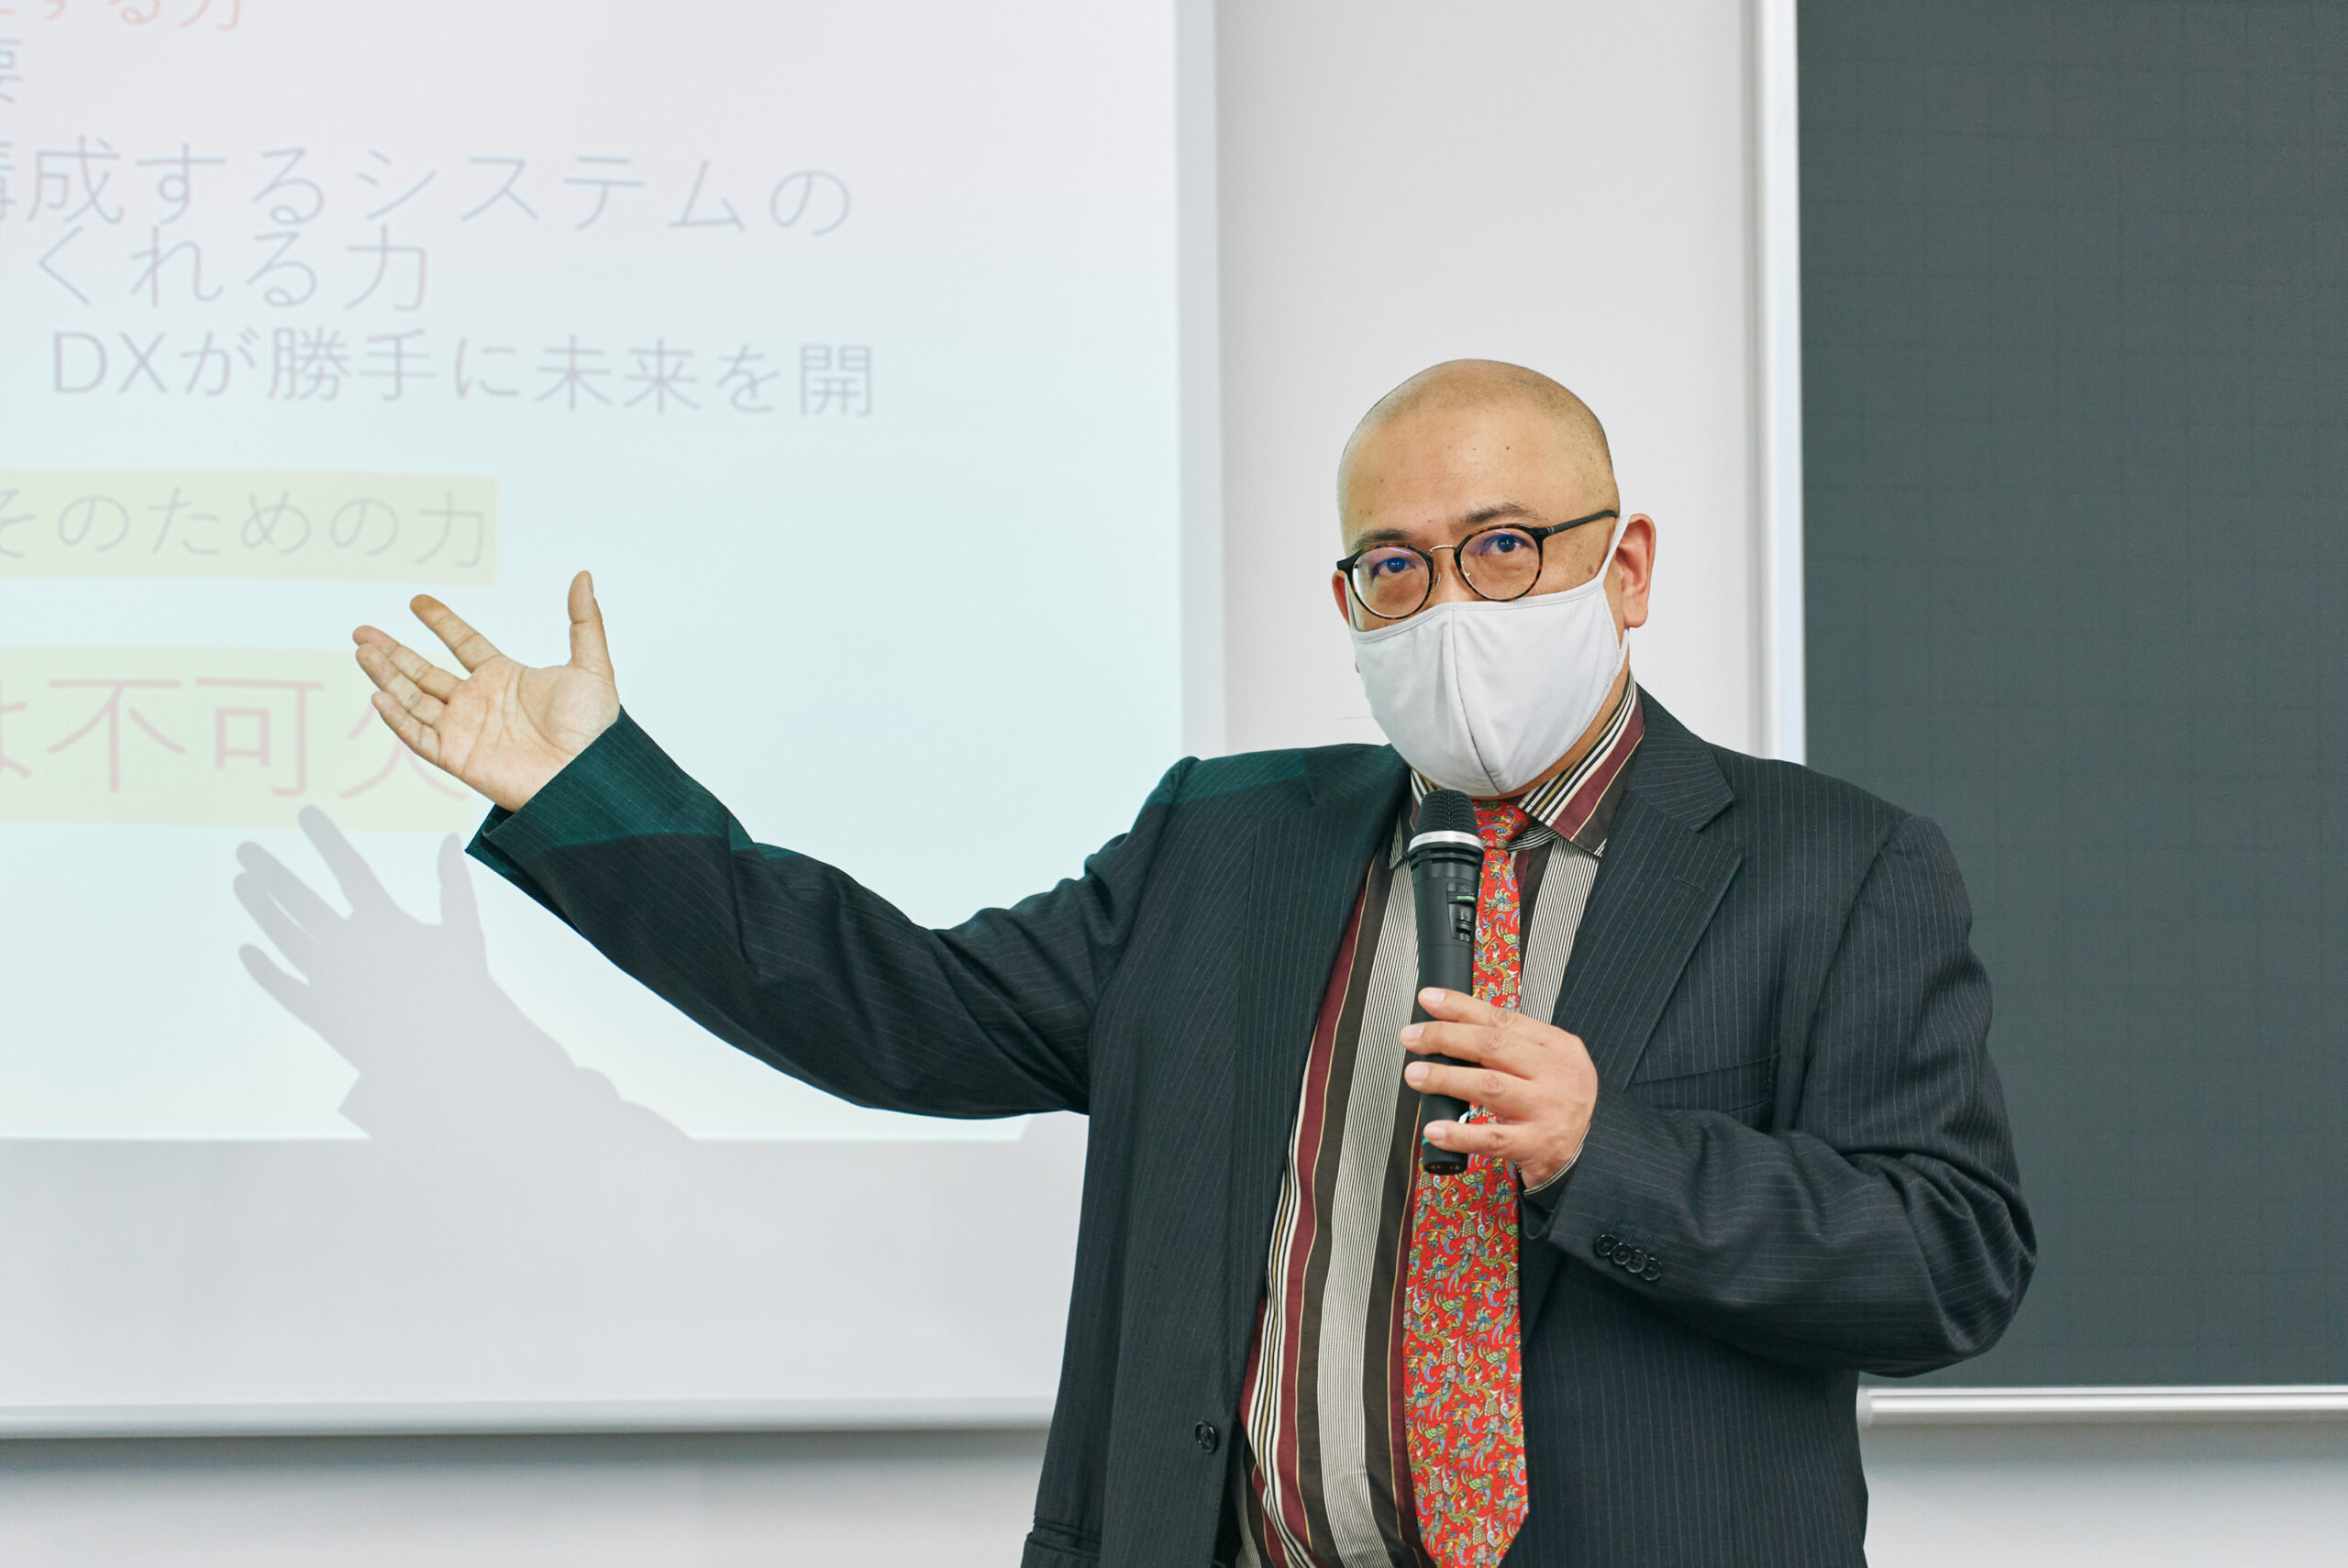 スライドを見せながら講義をしている和田先生